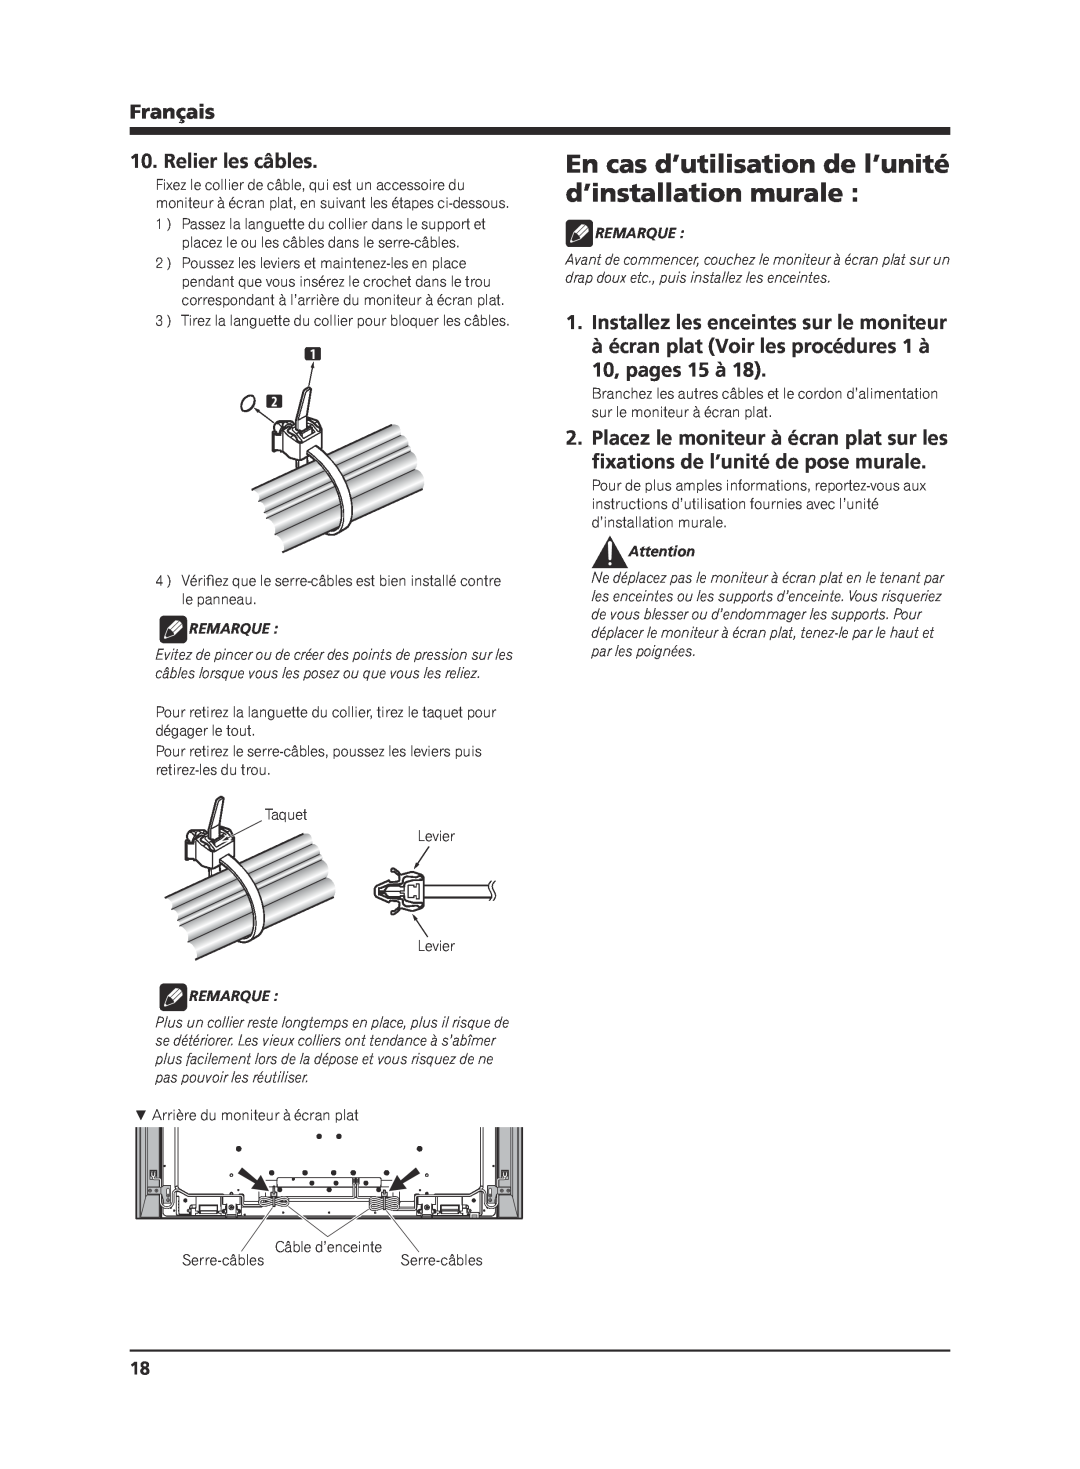 Pioneer KRP-S02 manual En cas d’utilisation de l’unité, d’installation murale, Relier les câbles, 10, pages 15 à, Français 